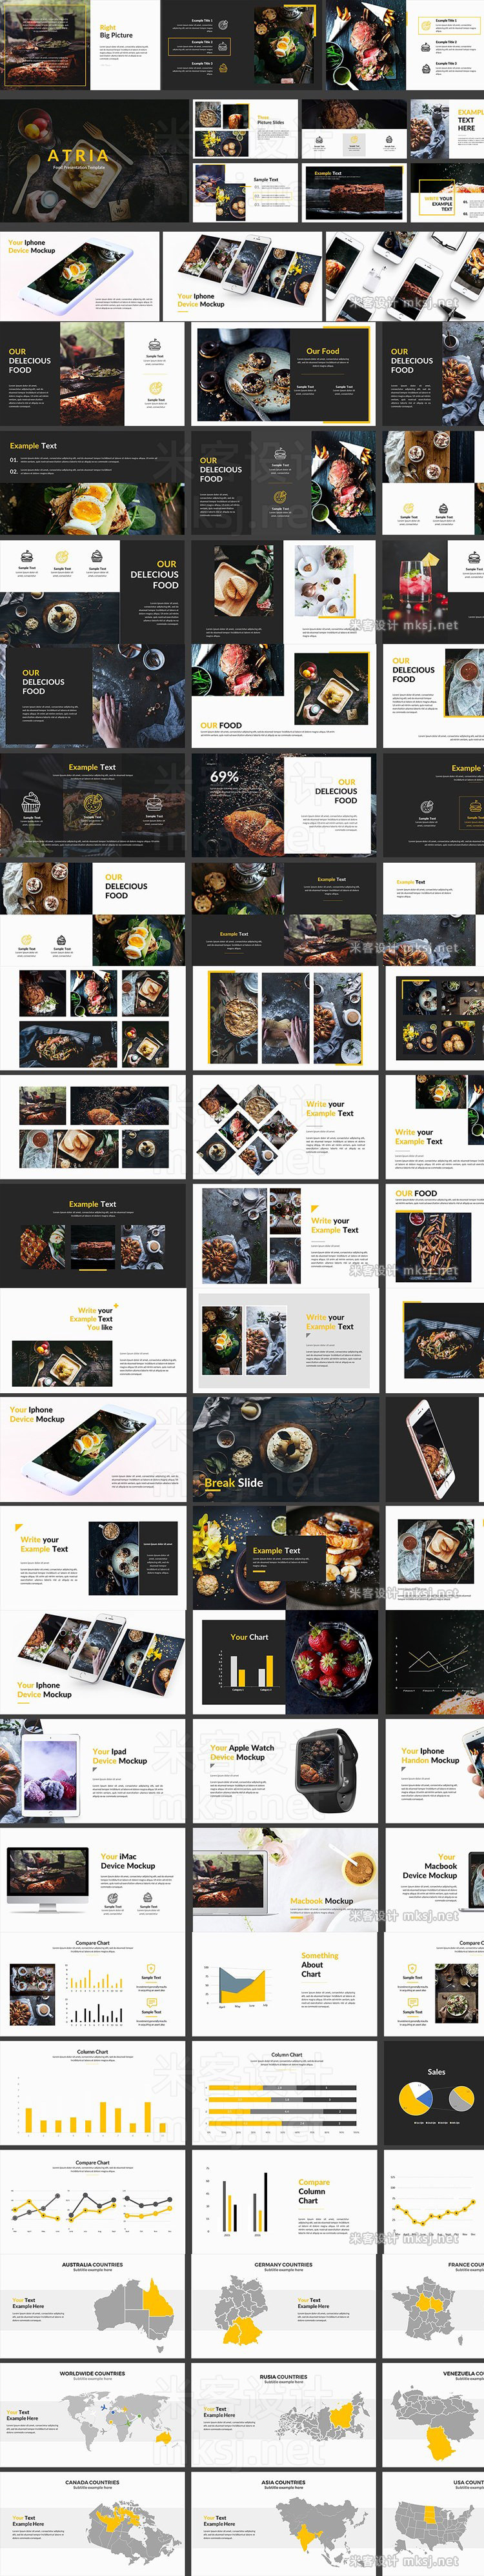 西餐厅酒店食物菜品手机平板笔记本智能手表app展示宣传PPT模板 Food Powerpoint Template